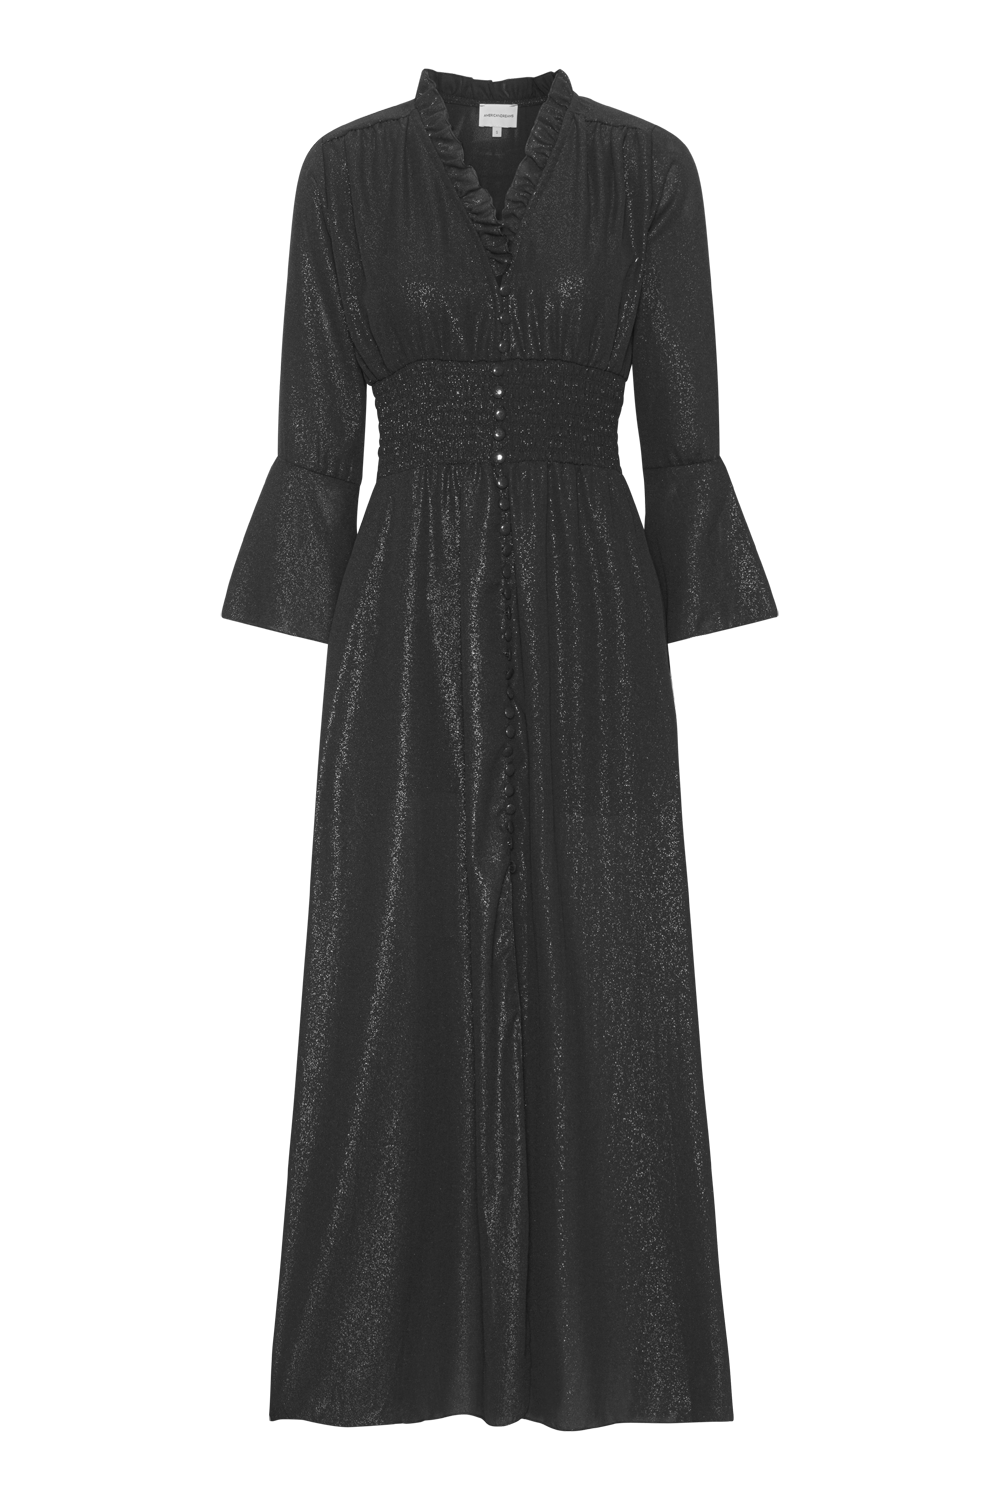 Sally Long Shimmer Dress Black - Sample